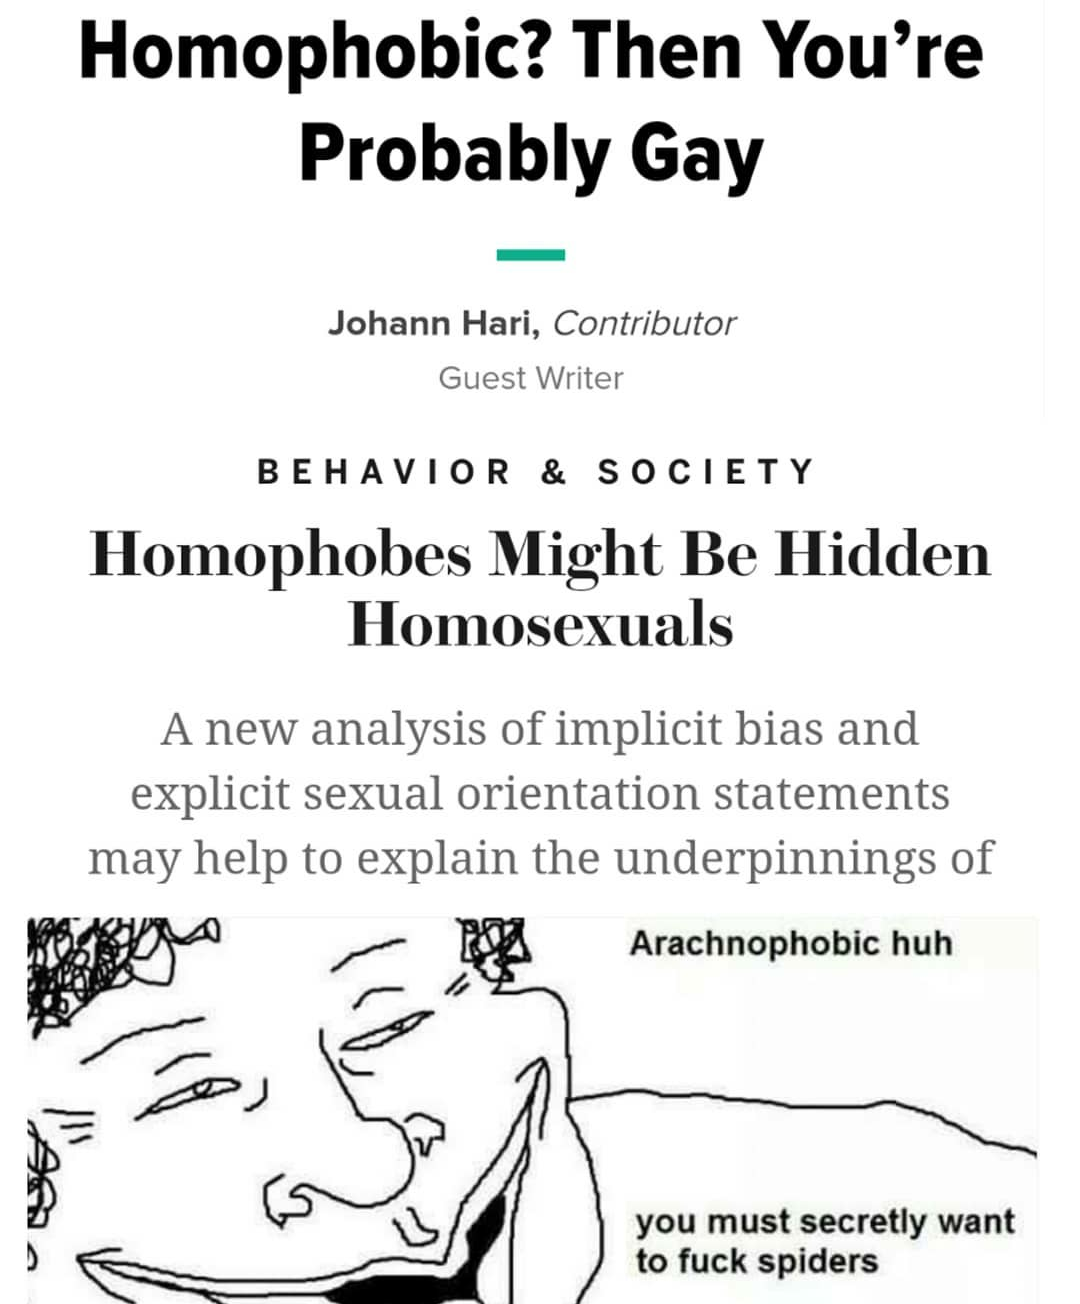 "Homophobia"